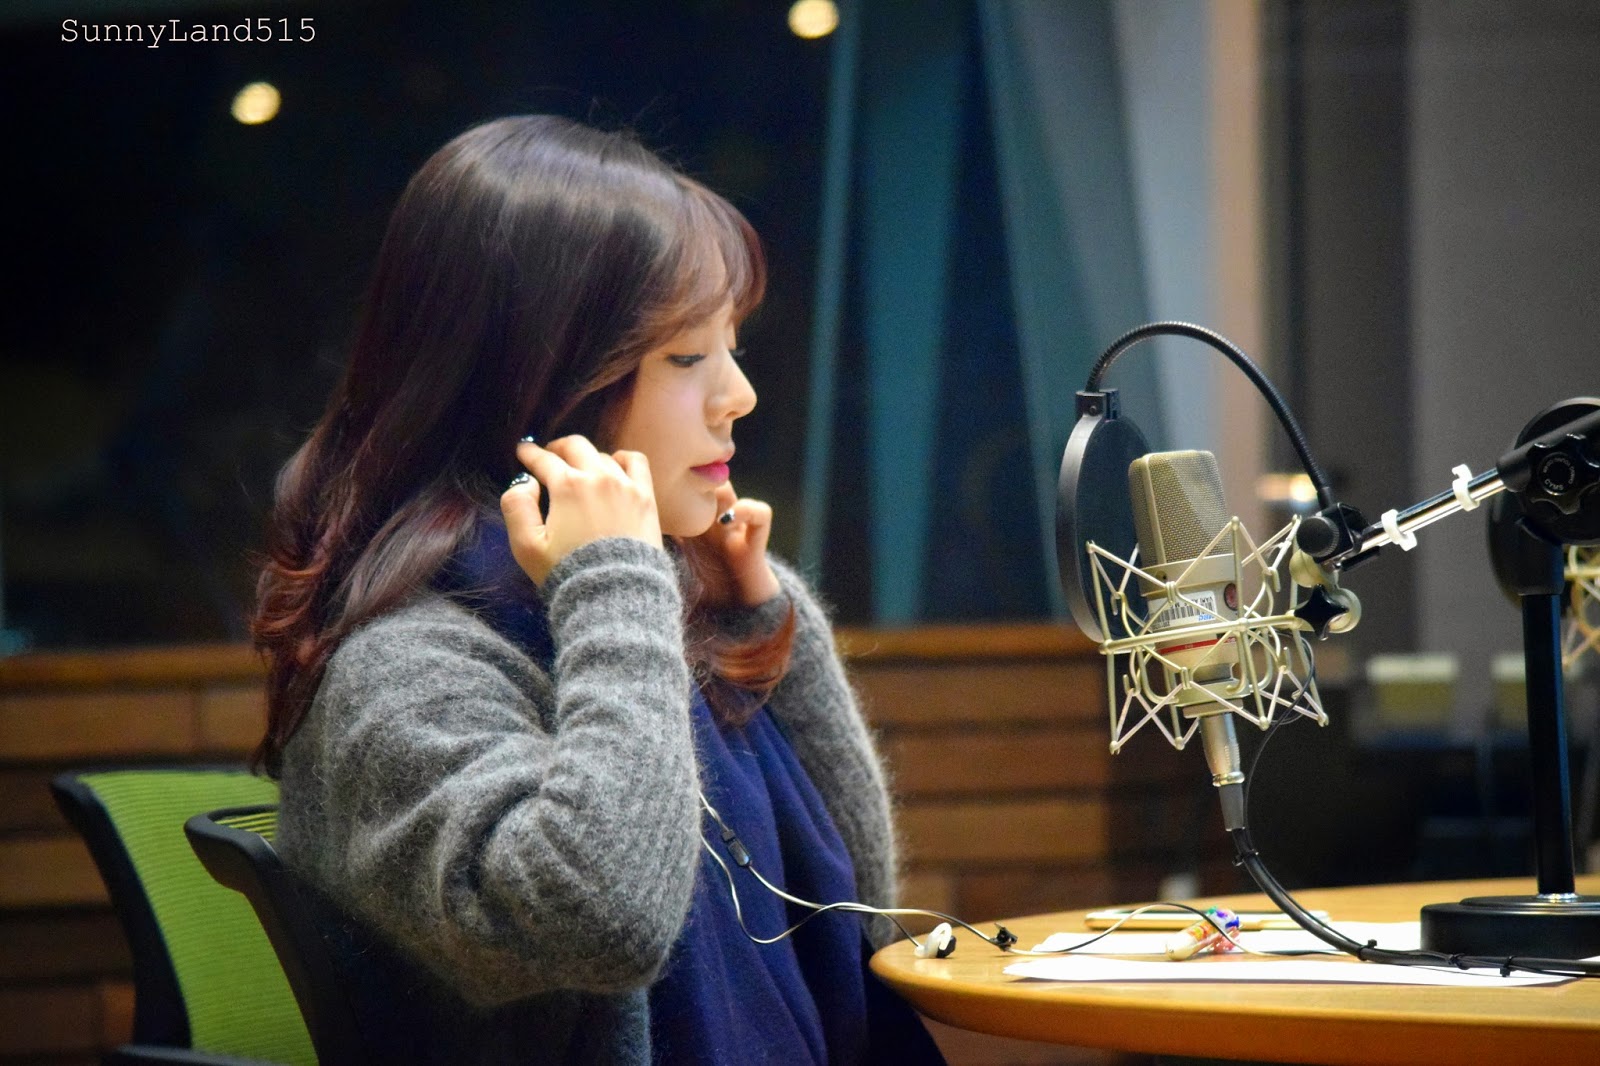 [OTHER][06-02-2015]Hình ảnh mới nhất từ DJ Sunny tại Radio MBC FM4U - "FM Date" - Page 10 DSC_0177_Fotor